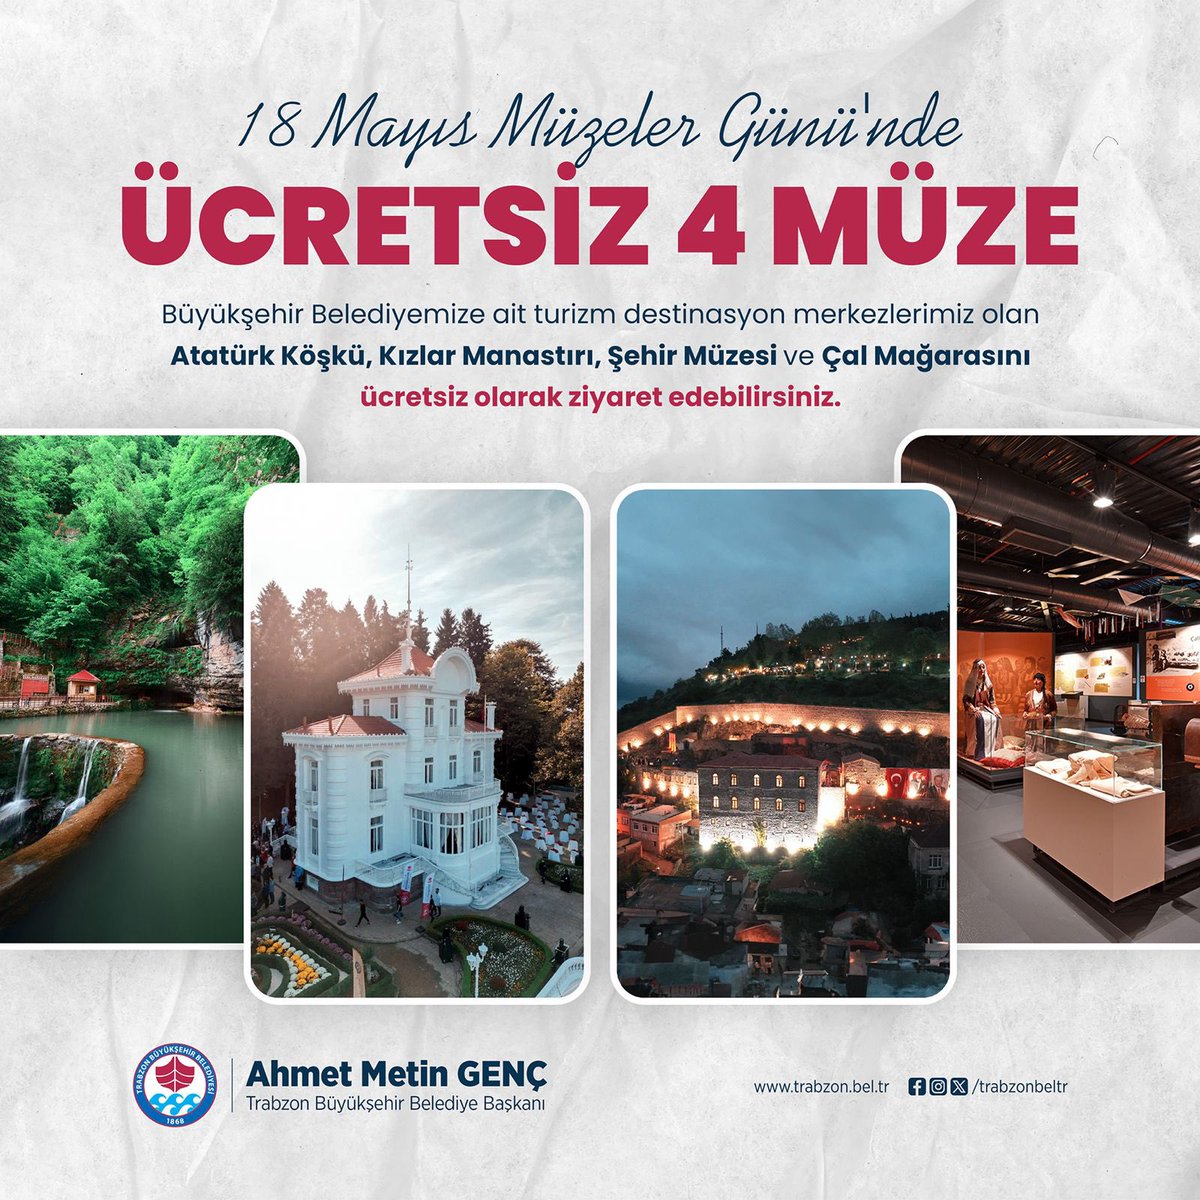 18 Mayıs Müzeler Günü'nde, Büyükşehir Belediyemize ait destinasyon merkezlerimiz olan Atatürk Köşkü, Kızlar Manastırı, Şehir Müzesi ve Çal Mağarasını ücretsiz olarak ziyaret edebilirsiniz.